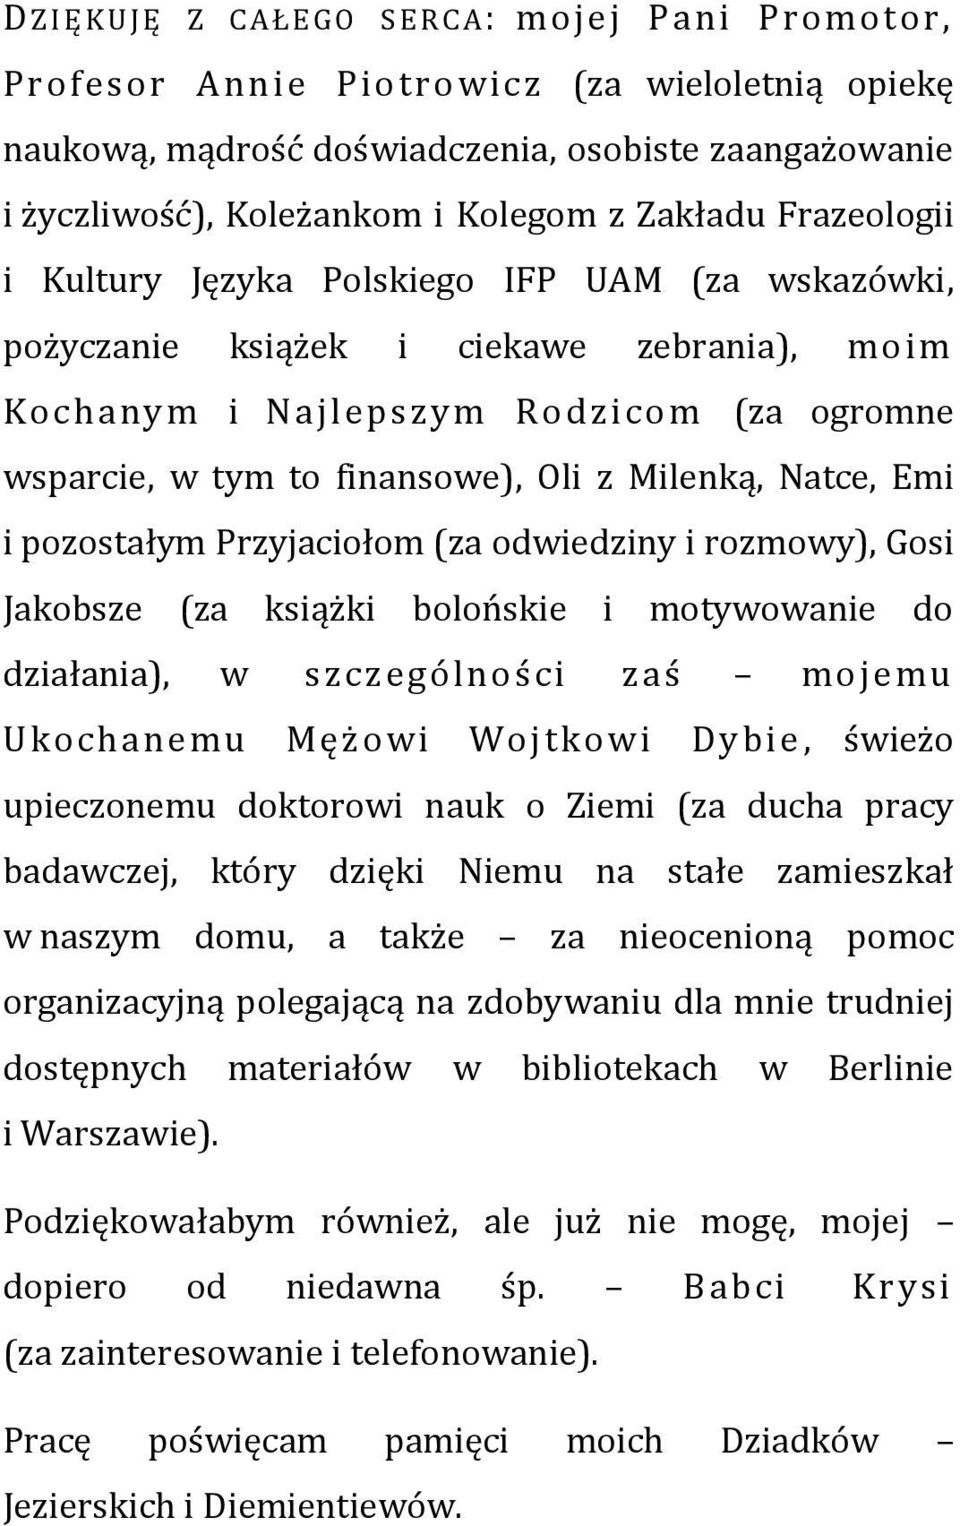 Beata Jezierska. Frazeologizmy w polskich przekładach współczesnej prozy  francuskiej (na wybranych przykładach) - PDF Darmowe pobieranie